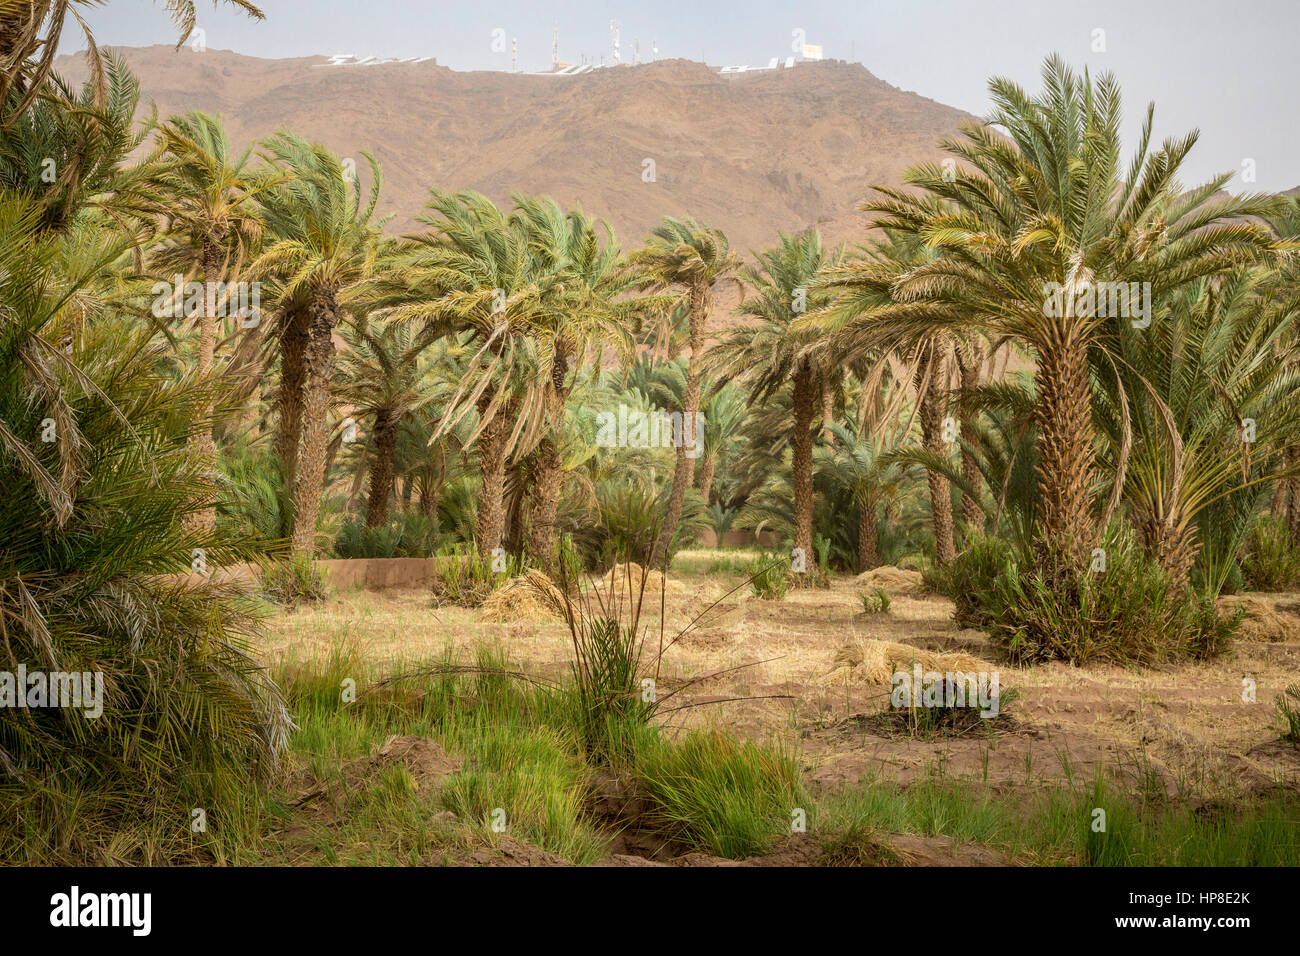 Zagora, Maroc. Tours de relais de communication modernes donnent sur de petites parcelles agricoles. Banque D'Images